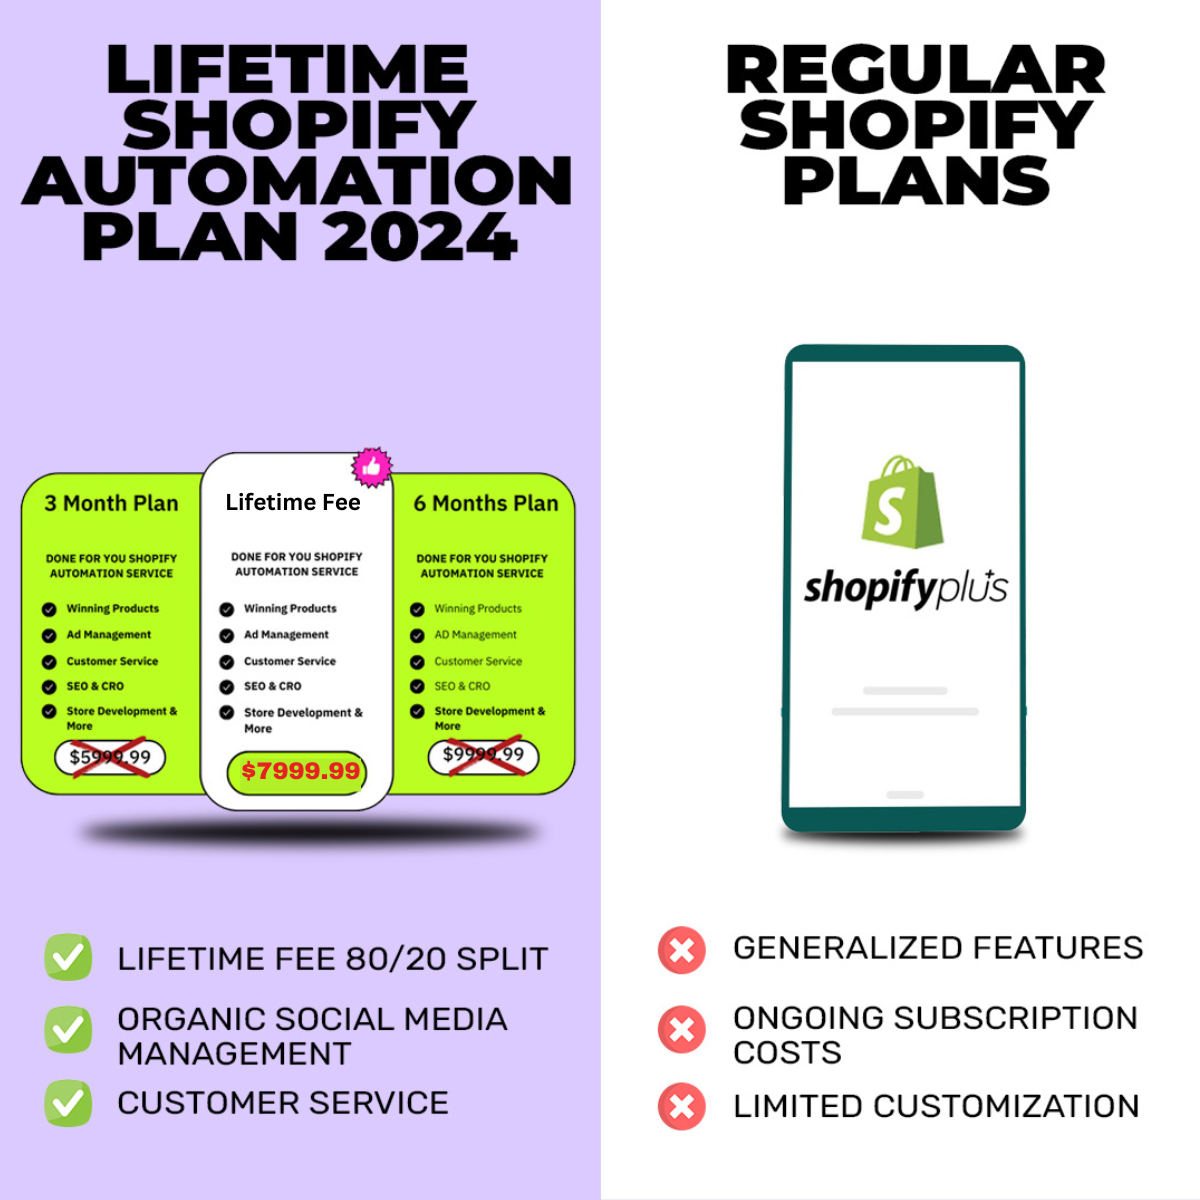 Lifetime Shopify Automation Plan 2024